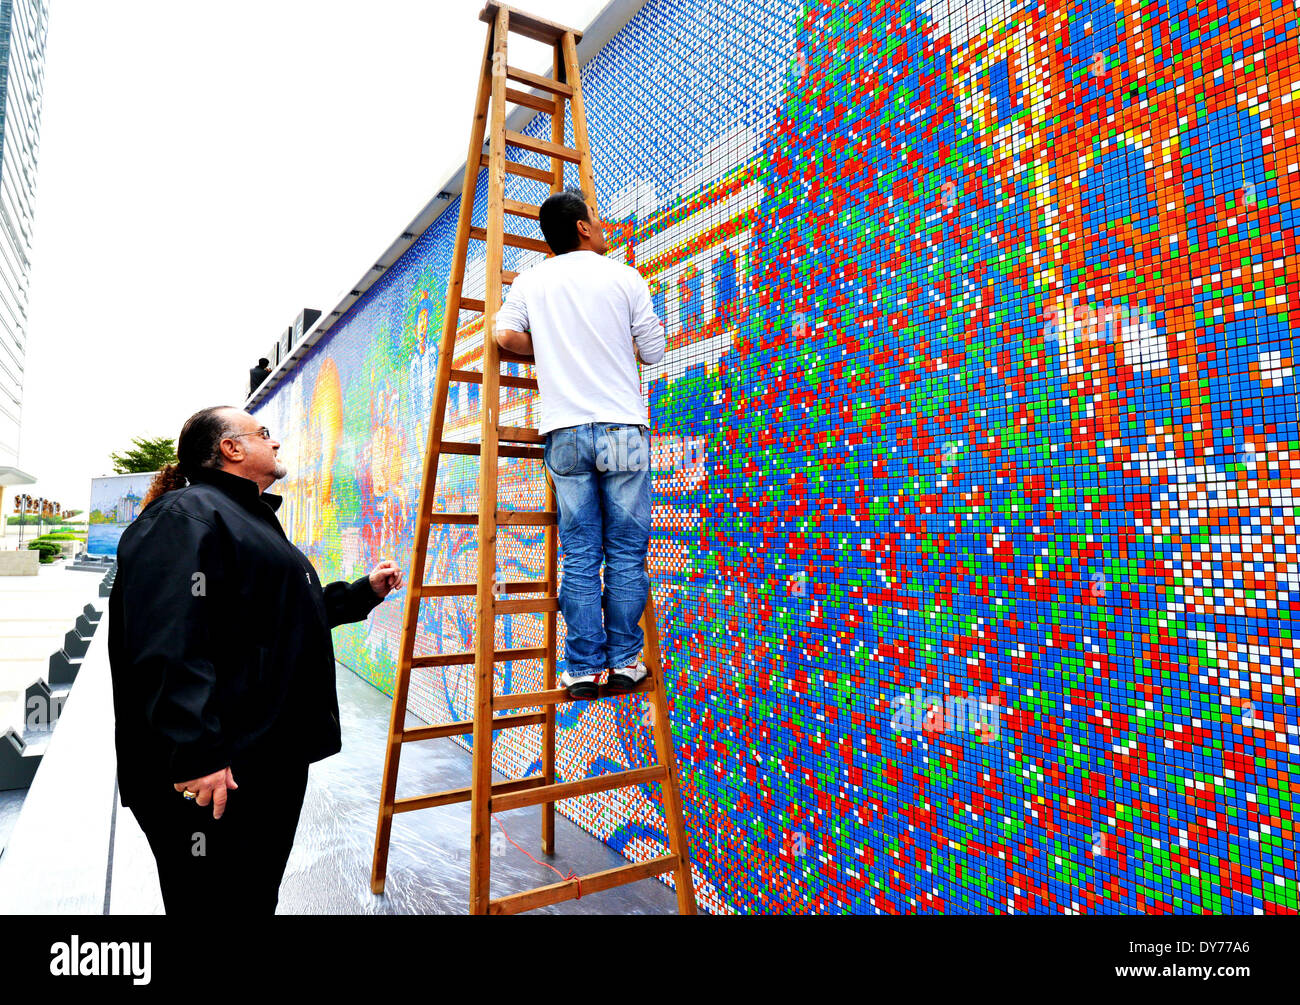 CubeWorks ha establecido un nuevo Récord Mundial de Guinness para "mosaico  de Cubo de Rubik más grande jamás creado' con 85.794 Cubos de Rubik para  recrear la silueta de la ciudad de